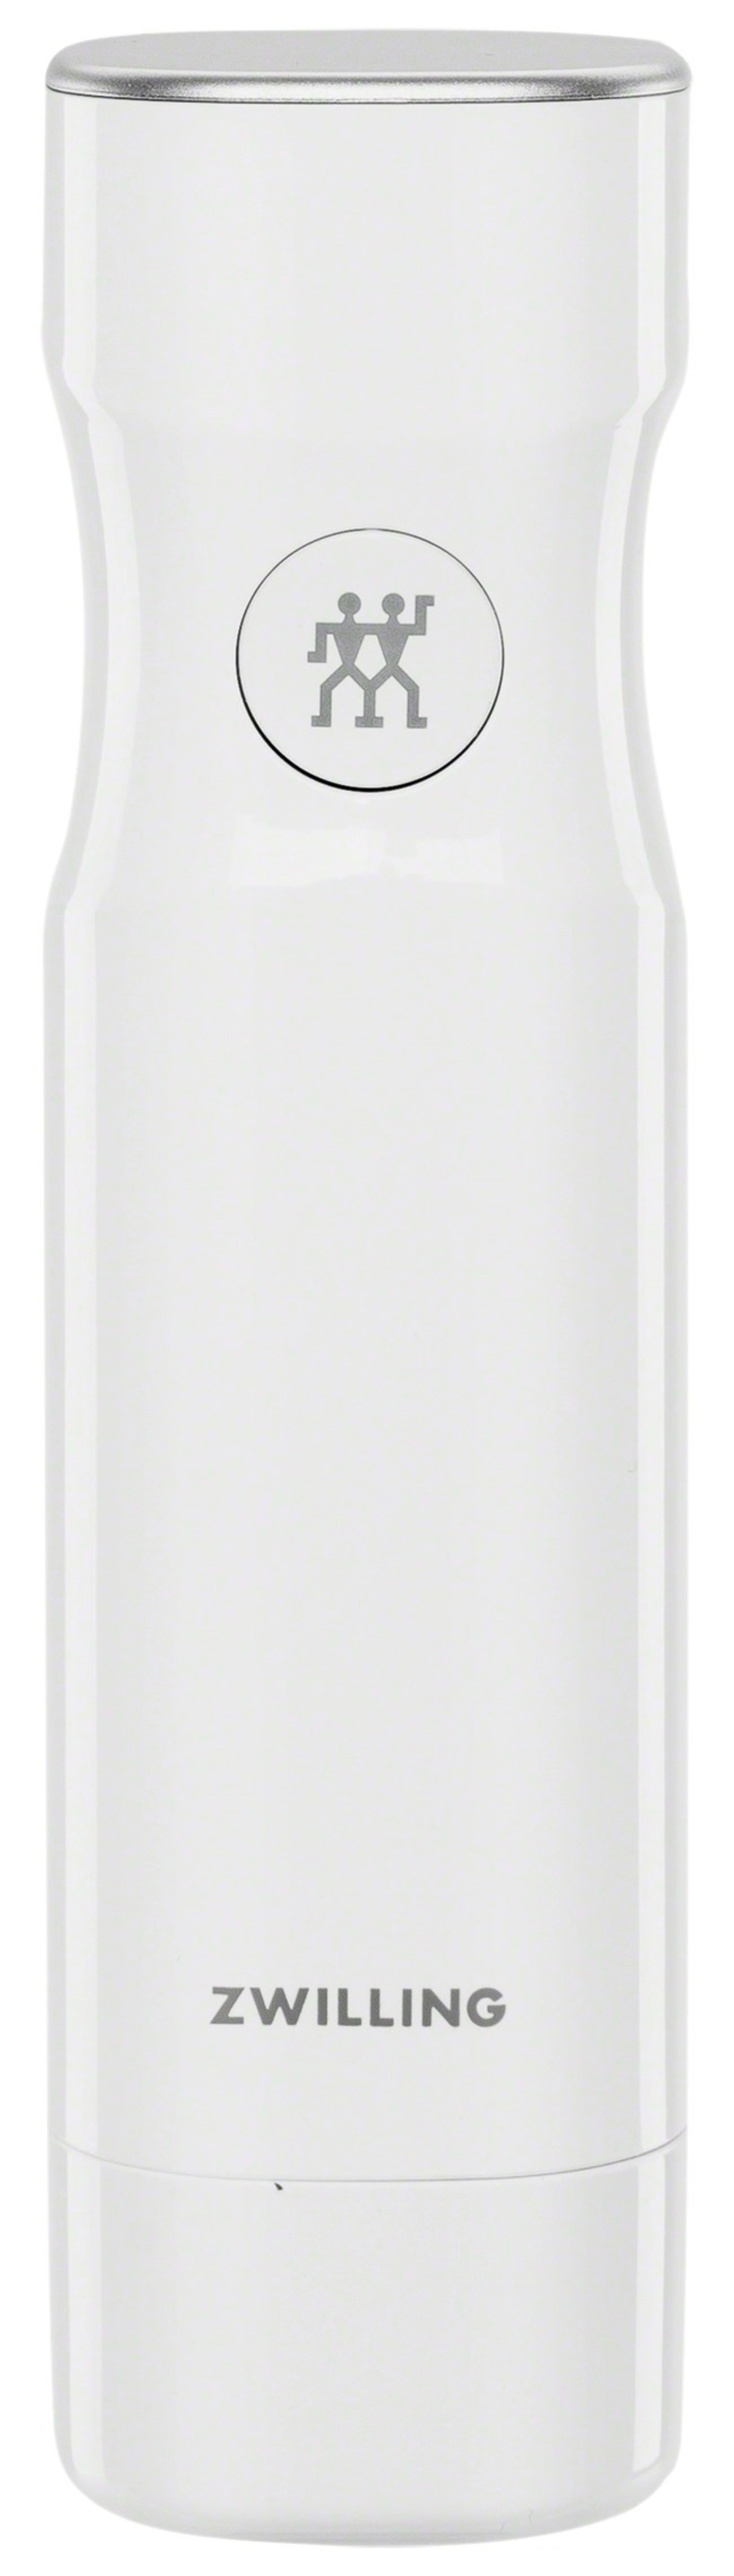 Pompe à vide avec usb, 5x5x19 cm, blanc